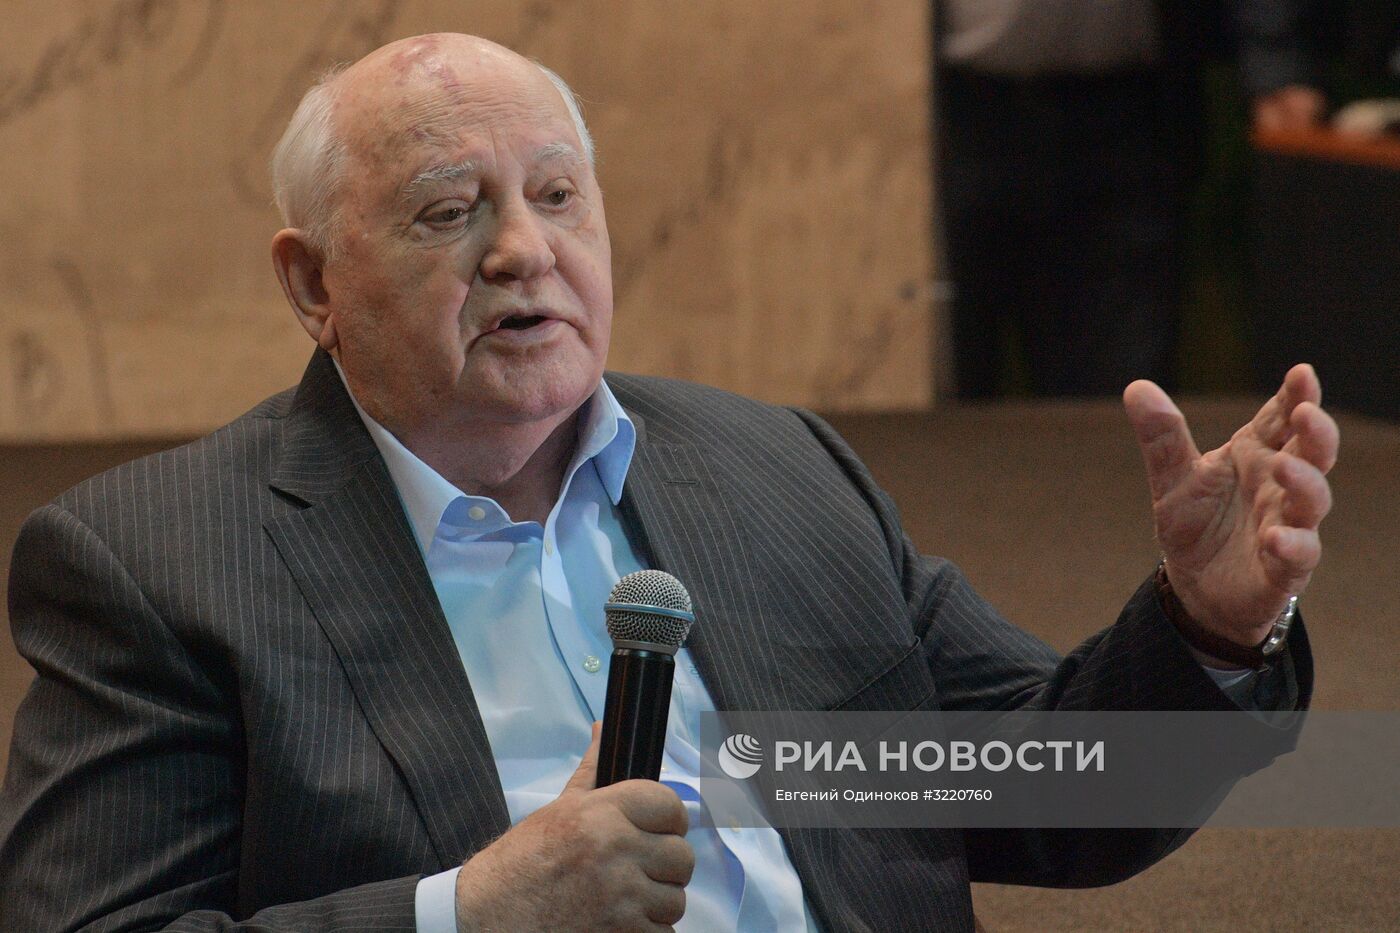 Презентация книги М. Горбачева "Остаюсь оптимистом" в Московском Доме Книги